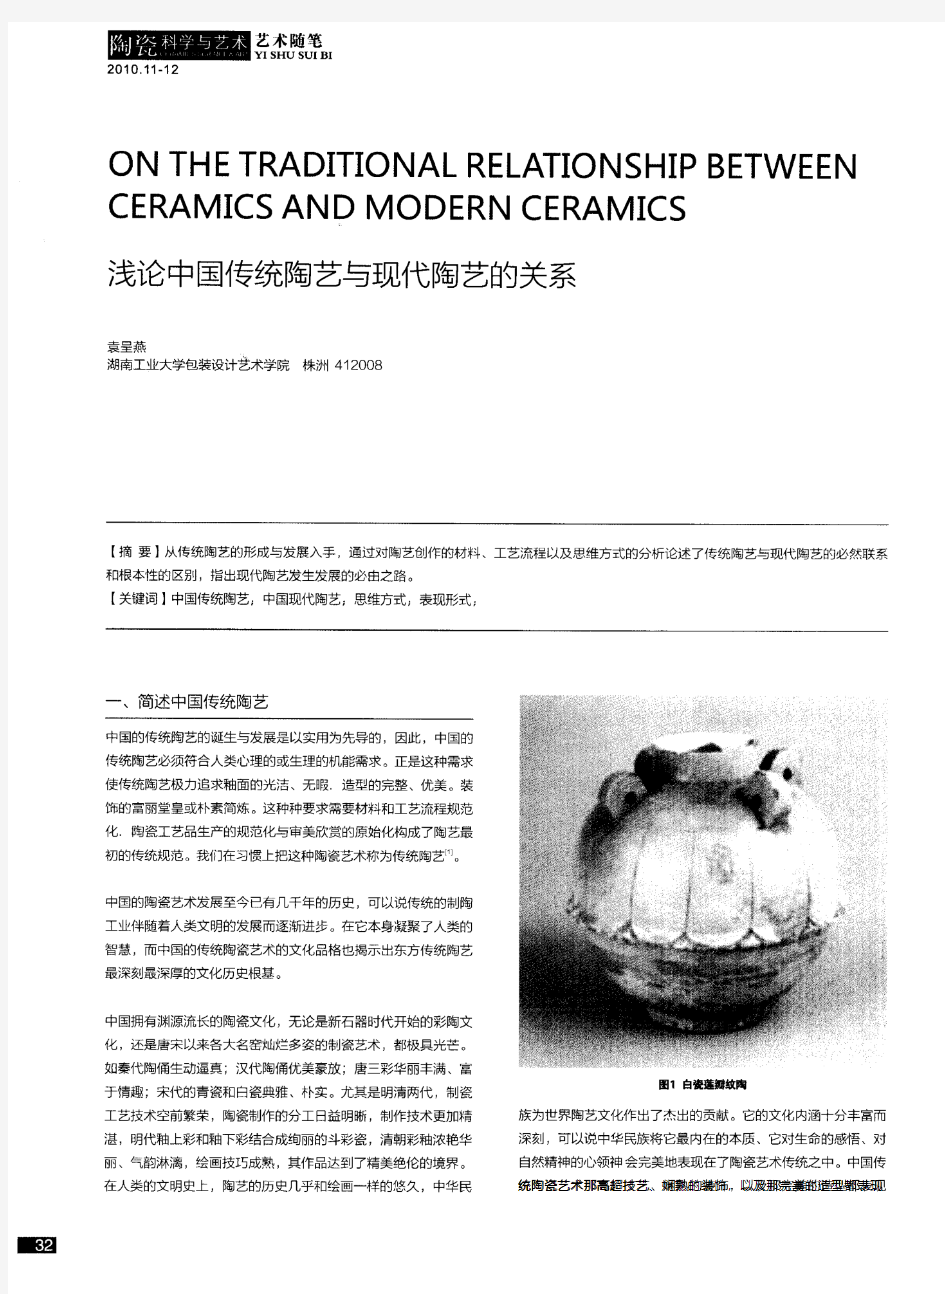 浅论中国传统陶艺与现代陶艺的关系